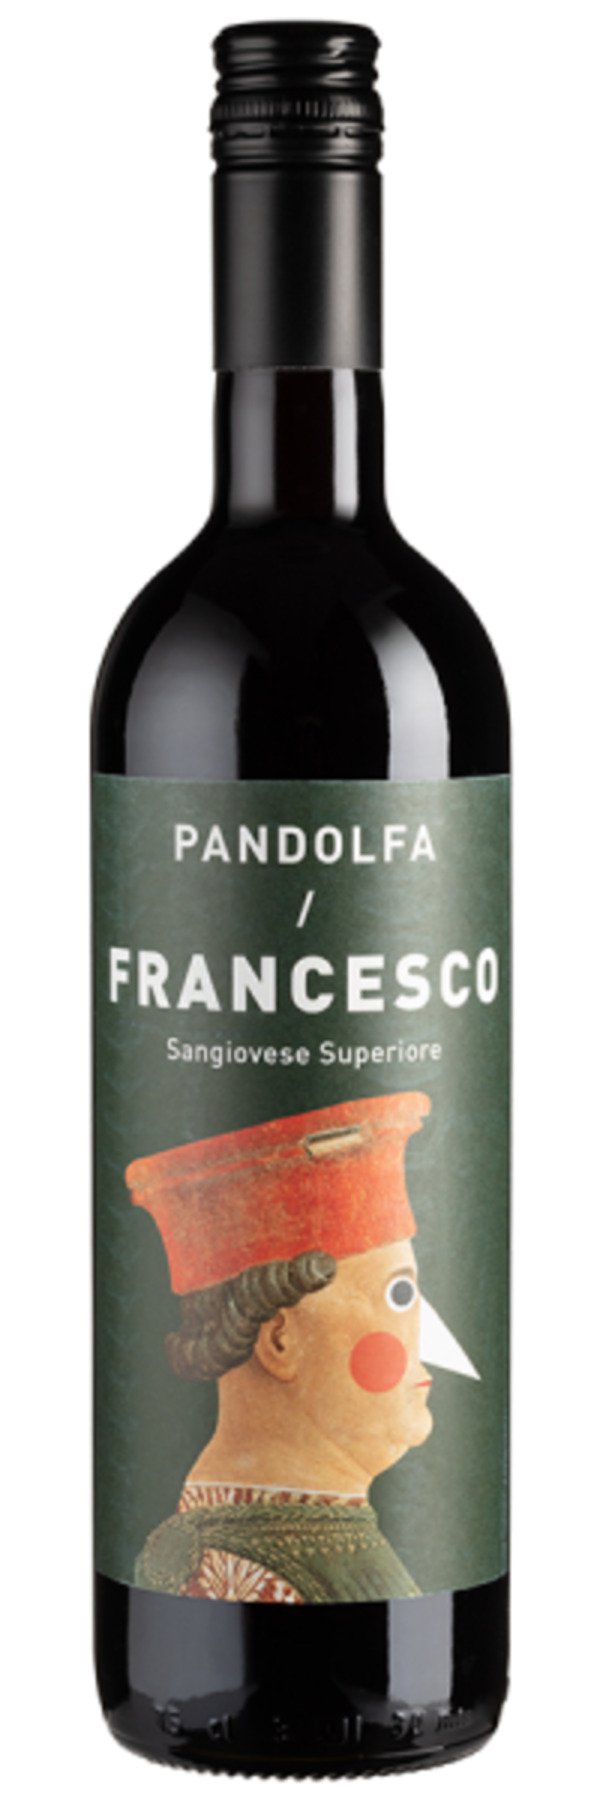 Bild 1 von Francesco Sangiovese Superiore - 2019 - Pandolfa - Italienischer Rotwein